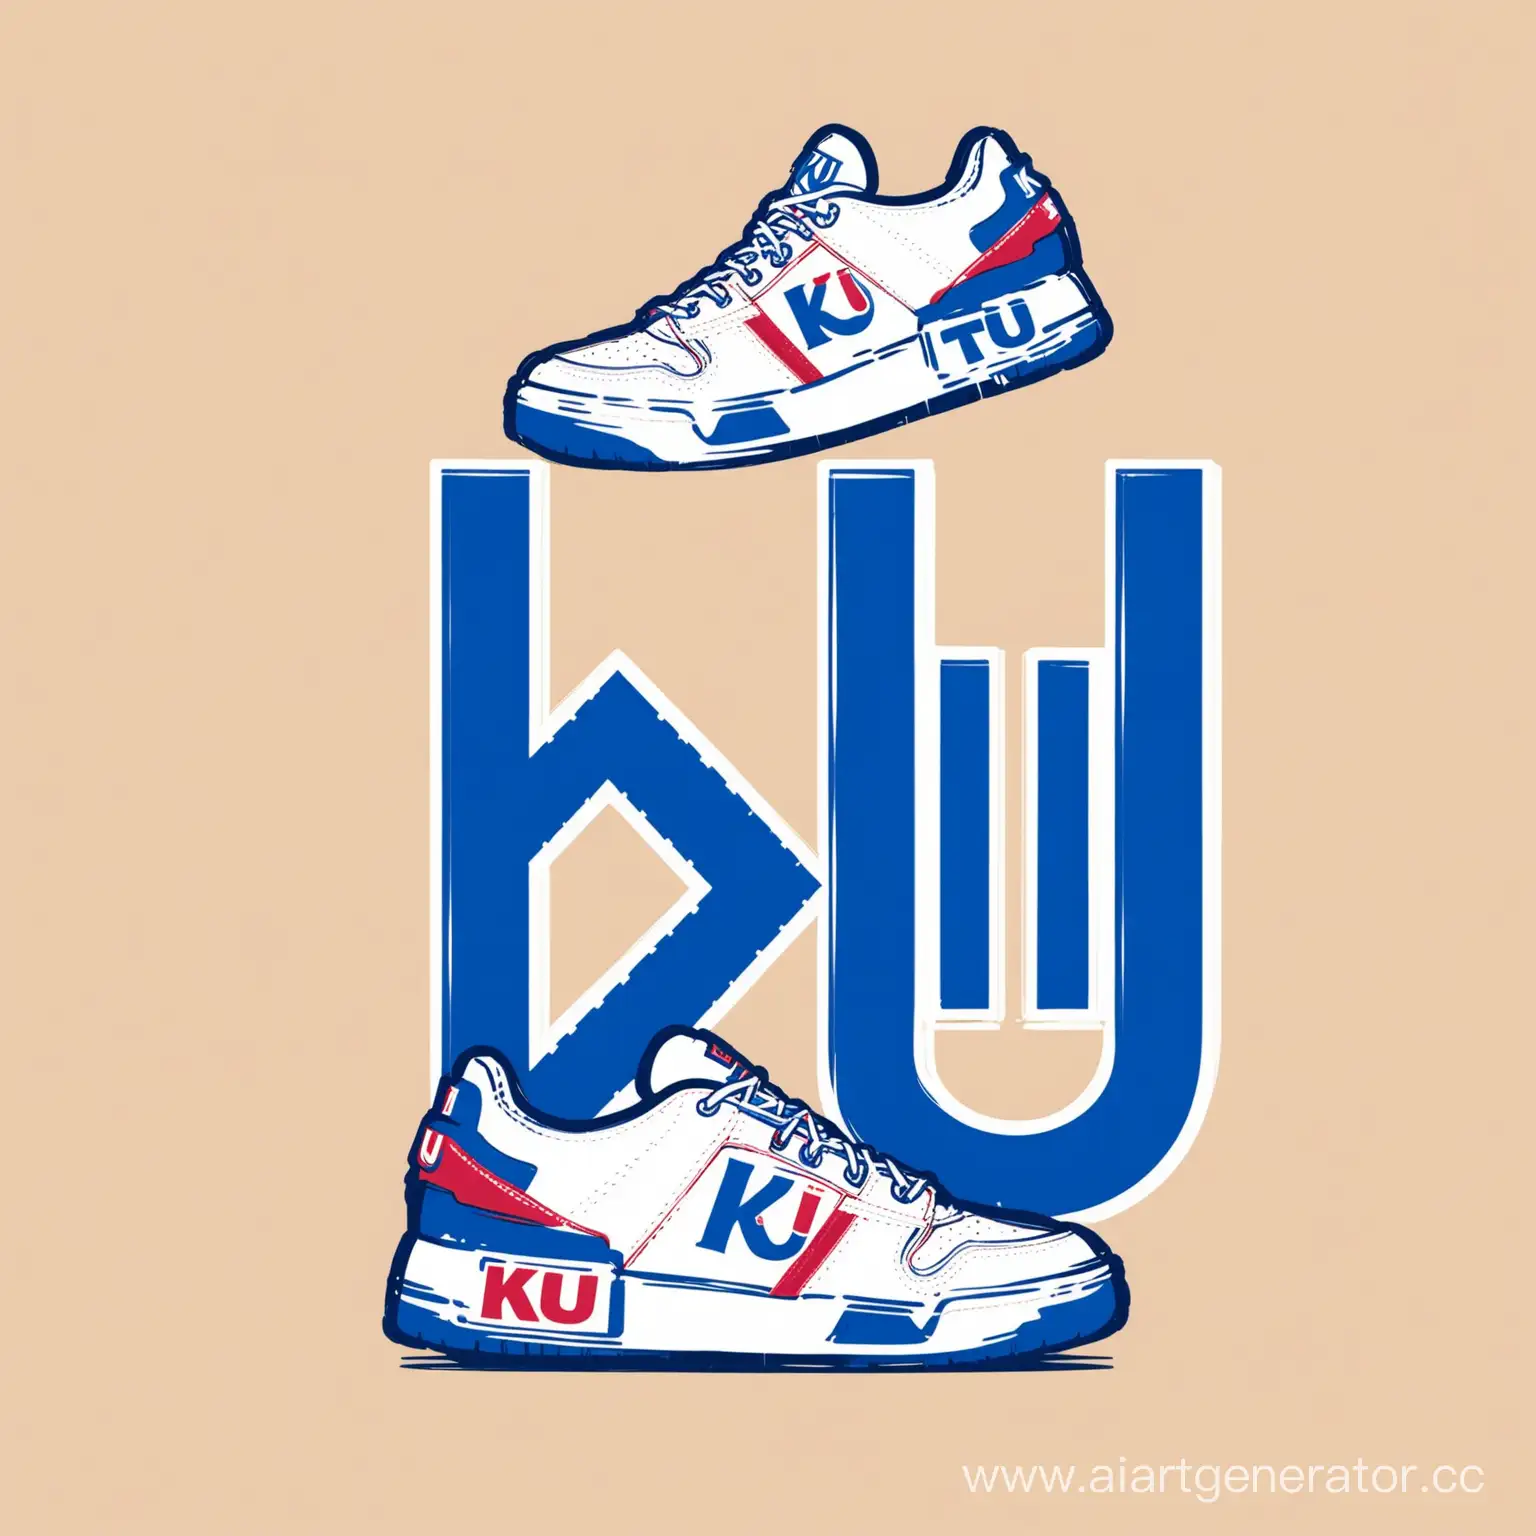 KU две буквы логотип и кроссовок 